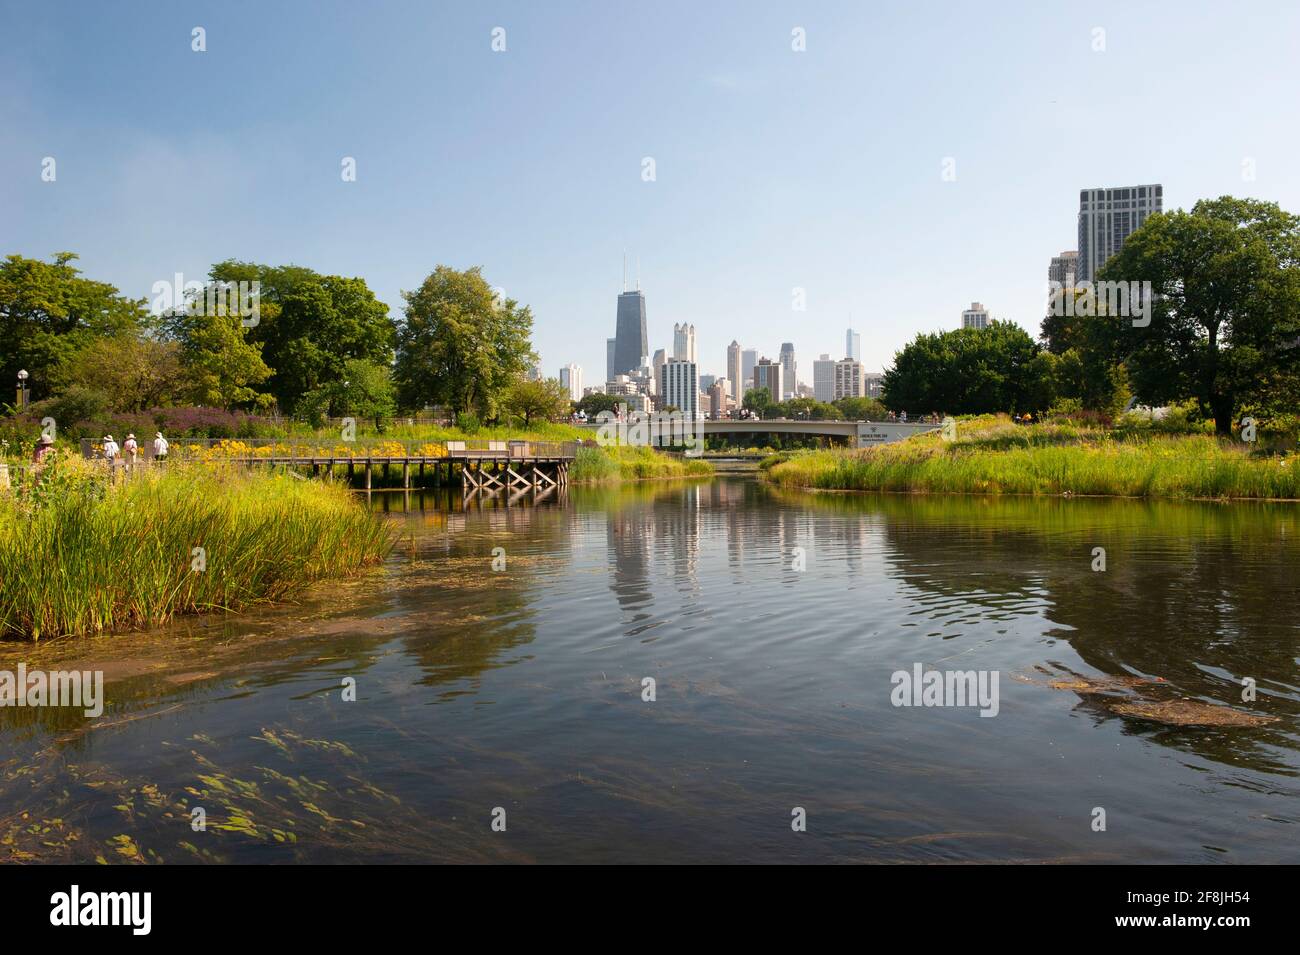 Una vista parcial del horizonte de Chicago vista desde los jardines de Lincoln Park. Foto de stock